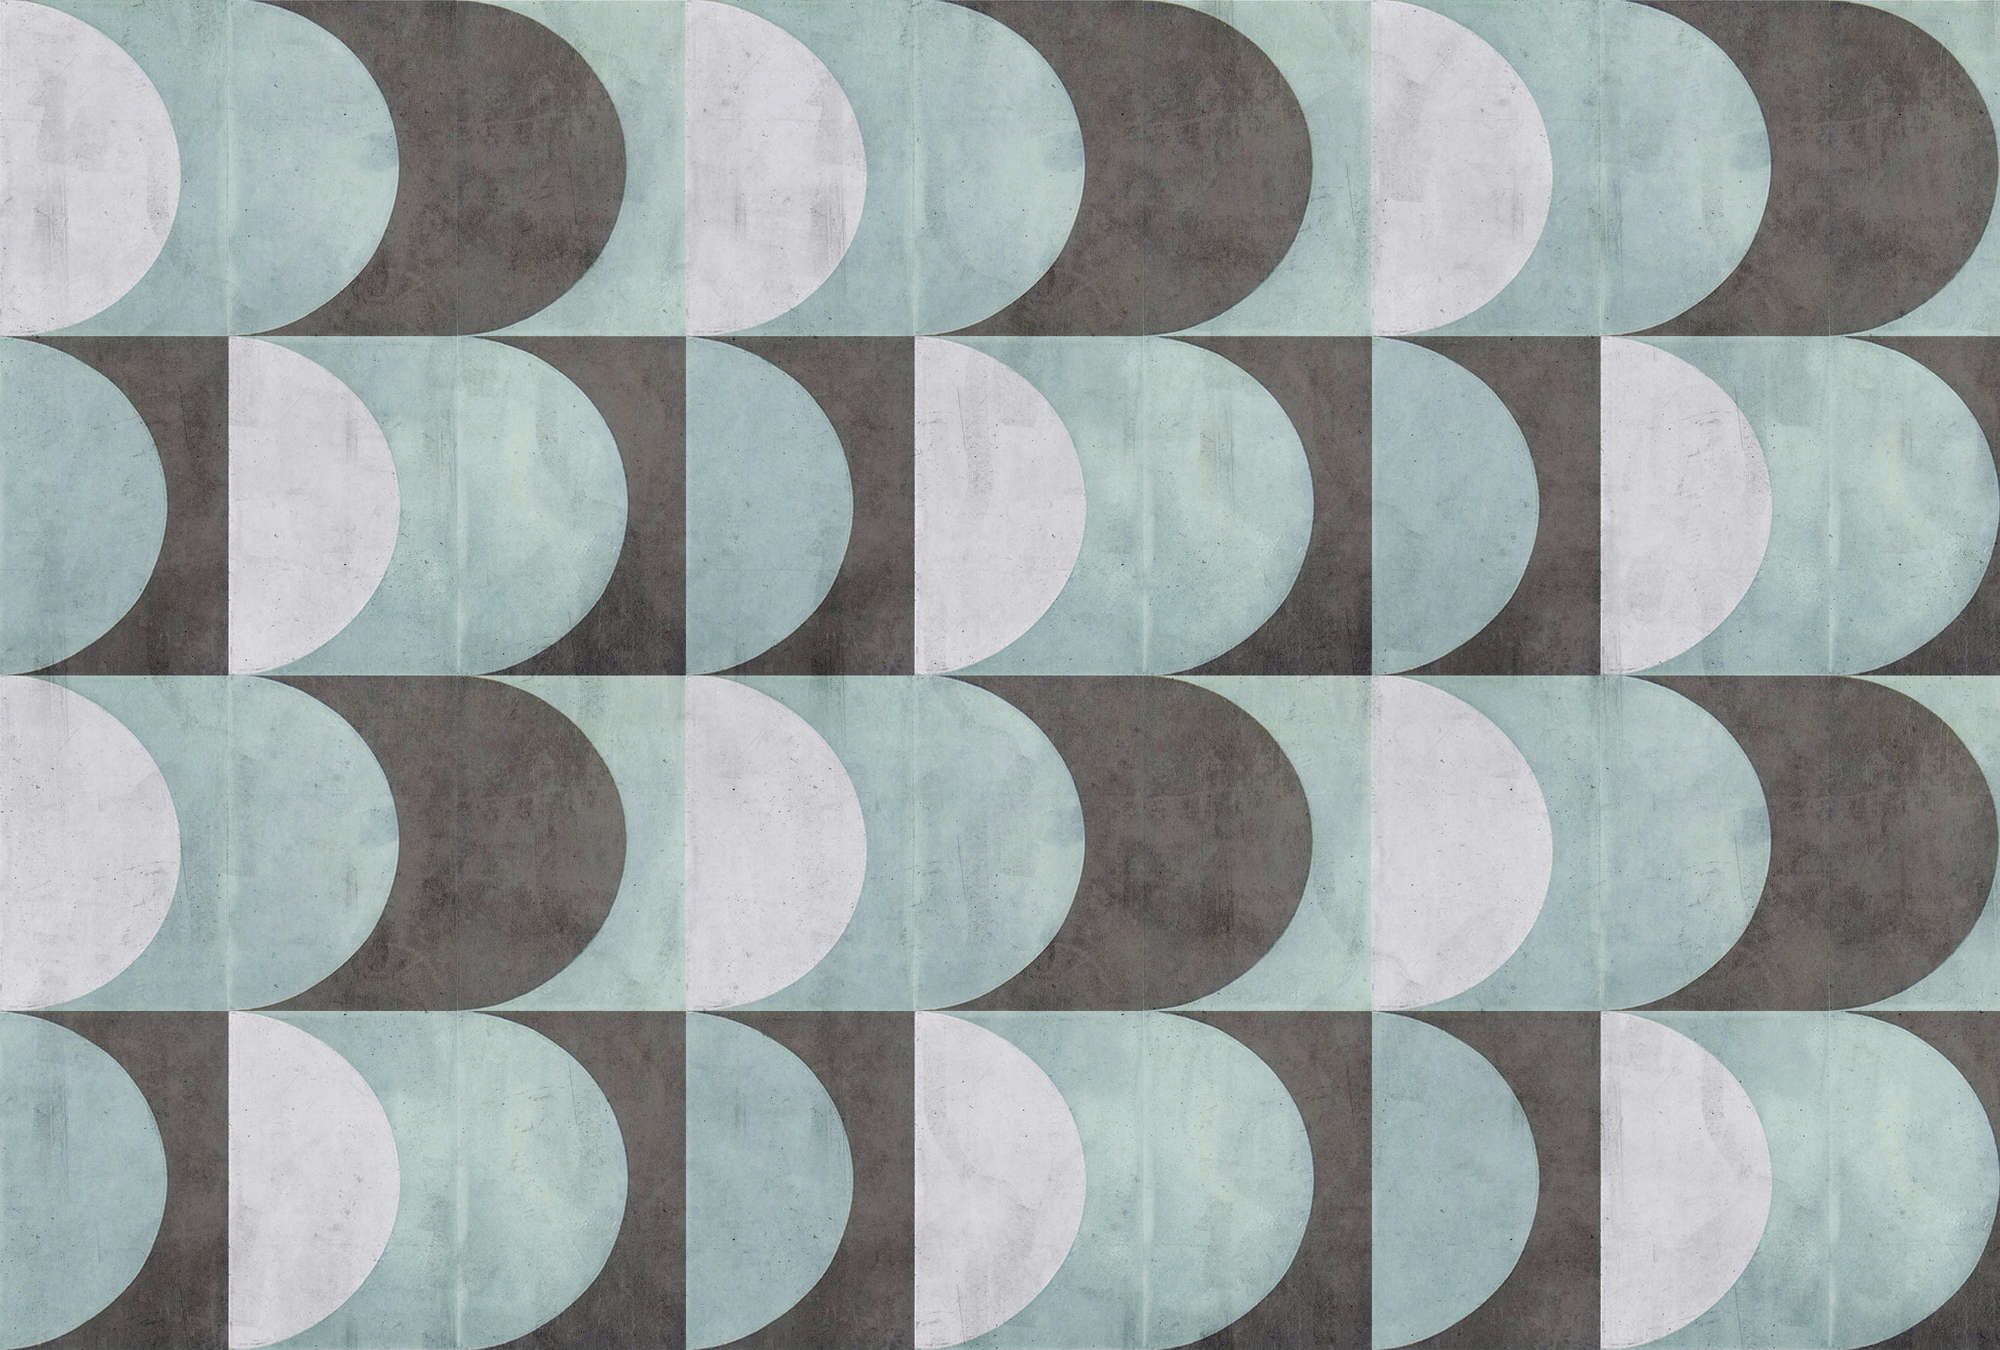             papier peint en papier panoramique »julek 2« - motif rétro imitation béton - vert menthe, gris | intissé légèrement structuré
        